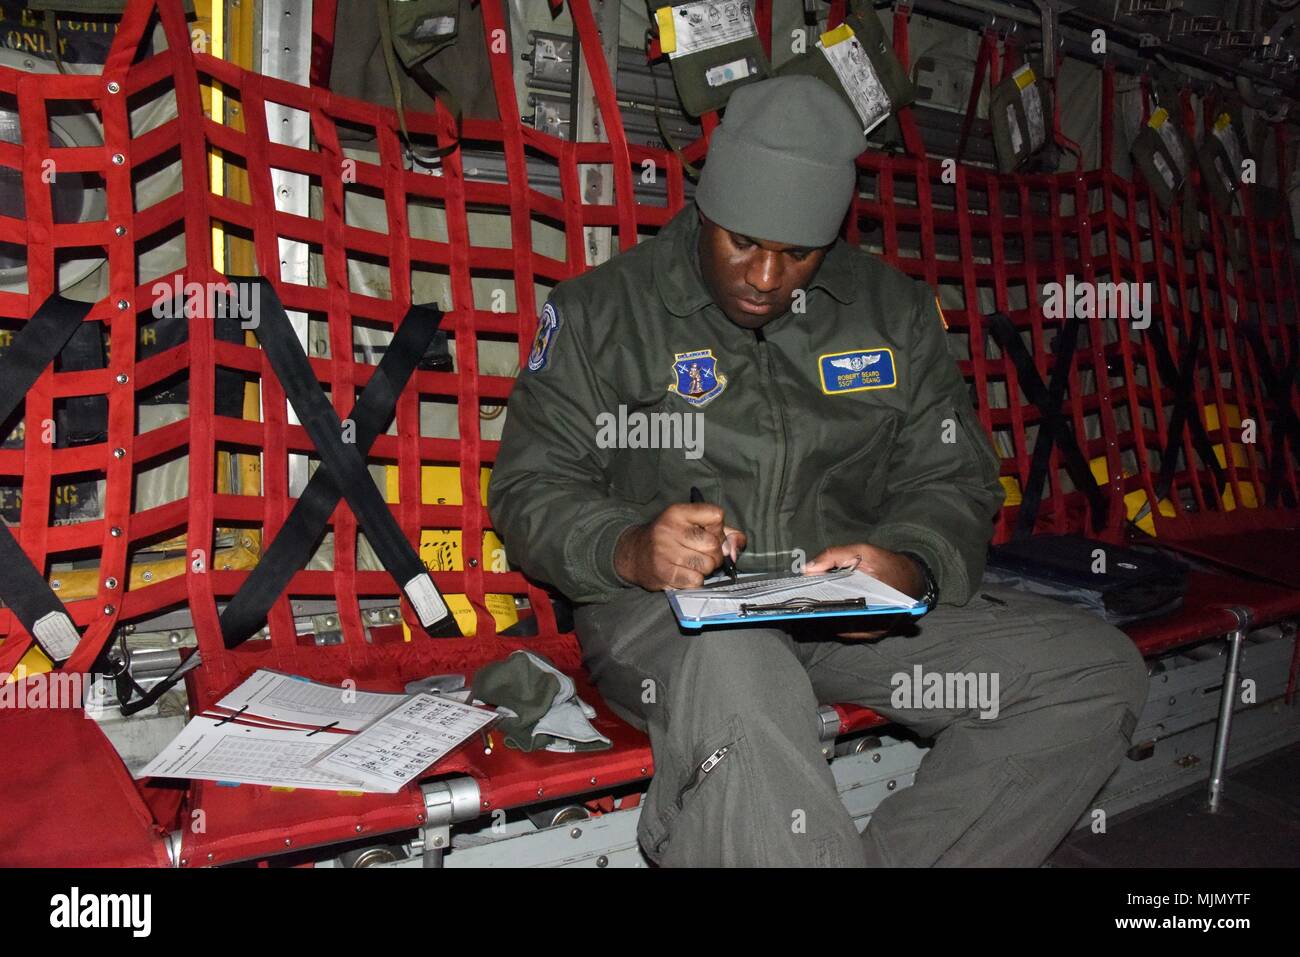 U S Army Staff Sgt Juan Fotos e Imágenes de stock - Página 3 - Alamy